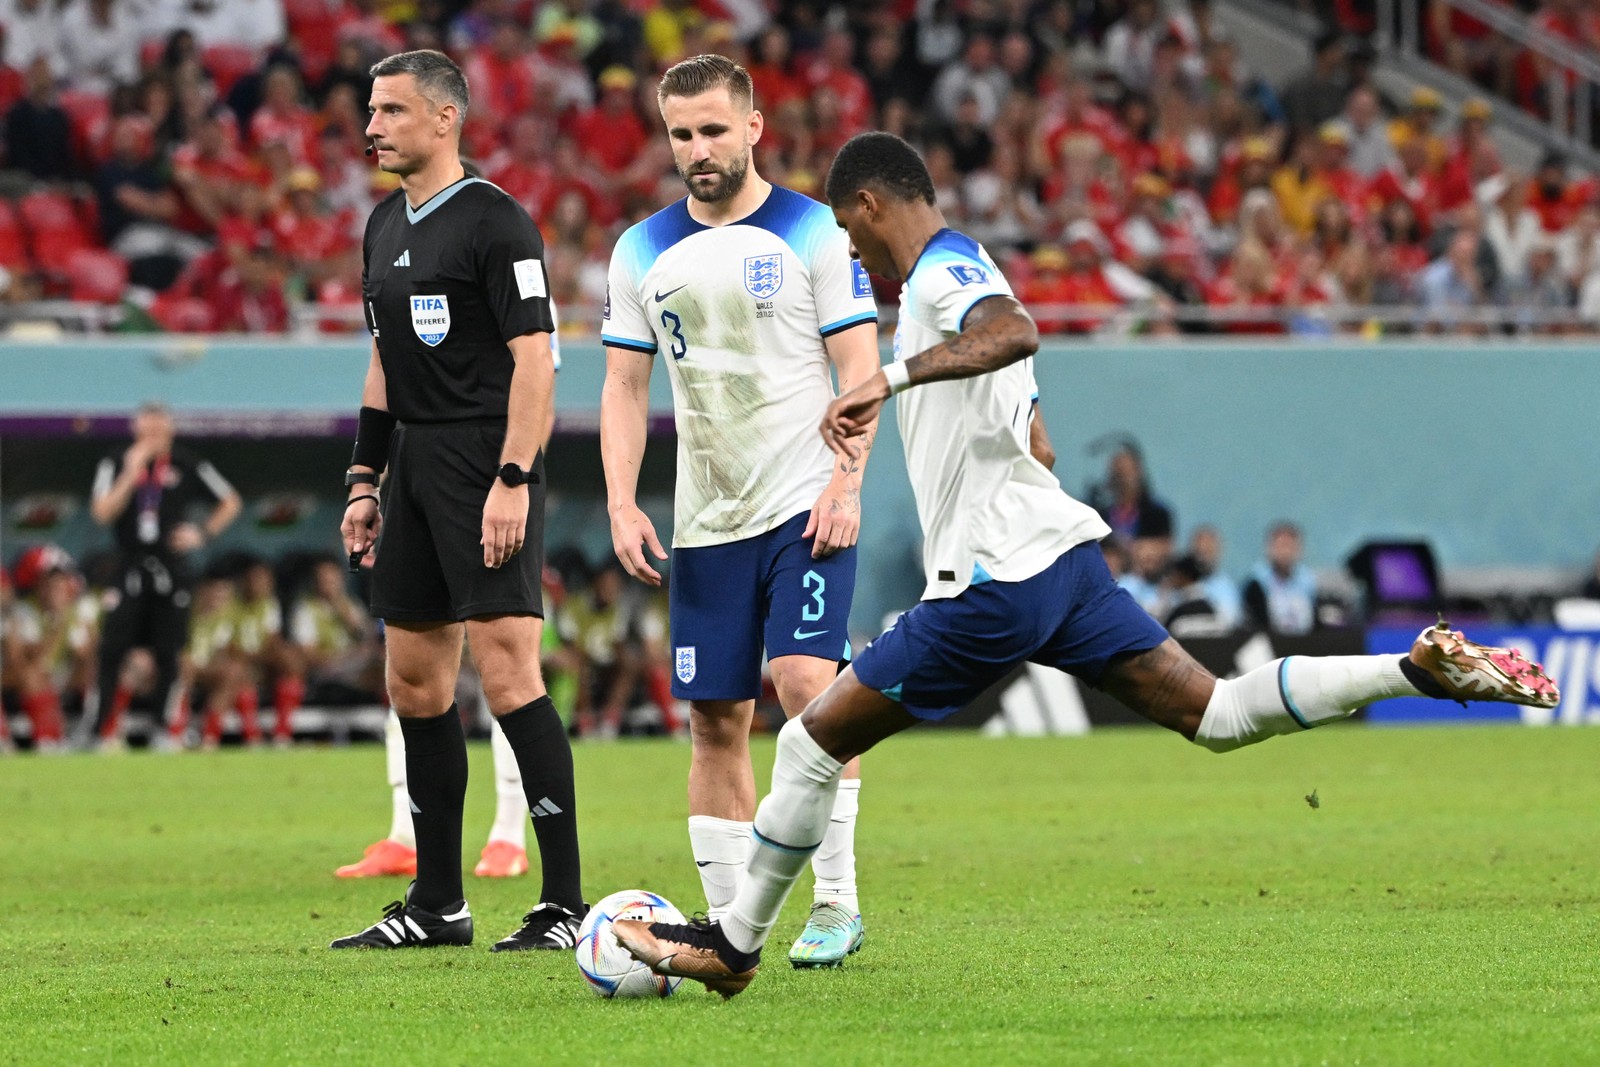 Marcus Rashford marca o primeiro gol da Inglaterra em uma cobrança de falta  — Foto: Ina Fassbender / AFP